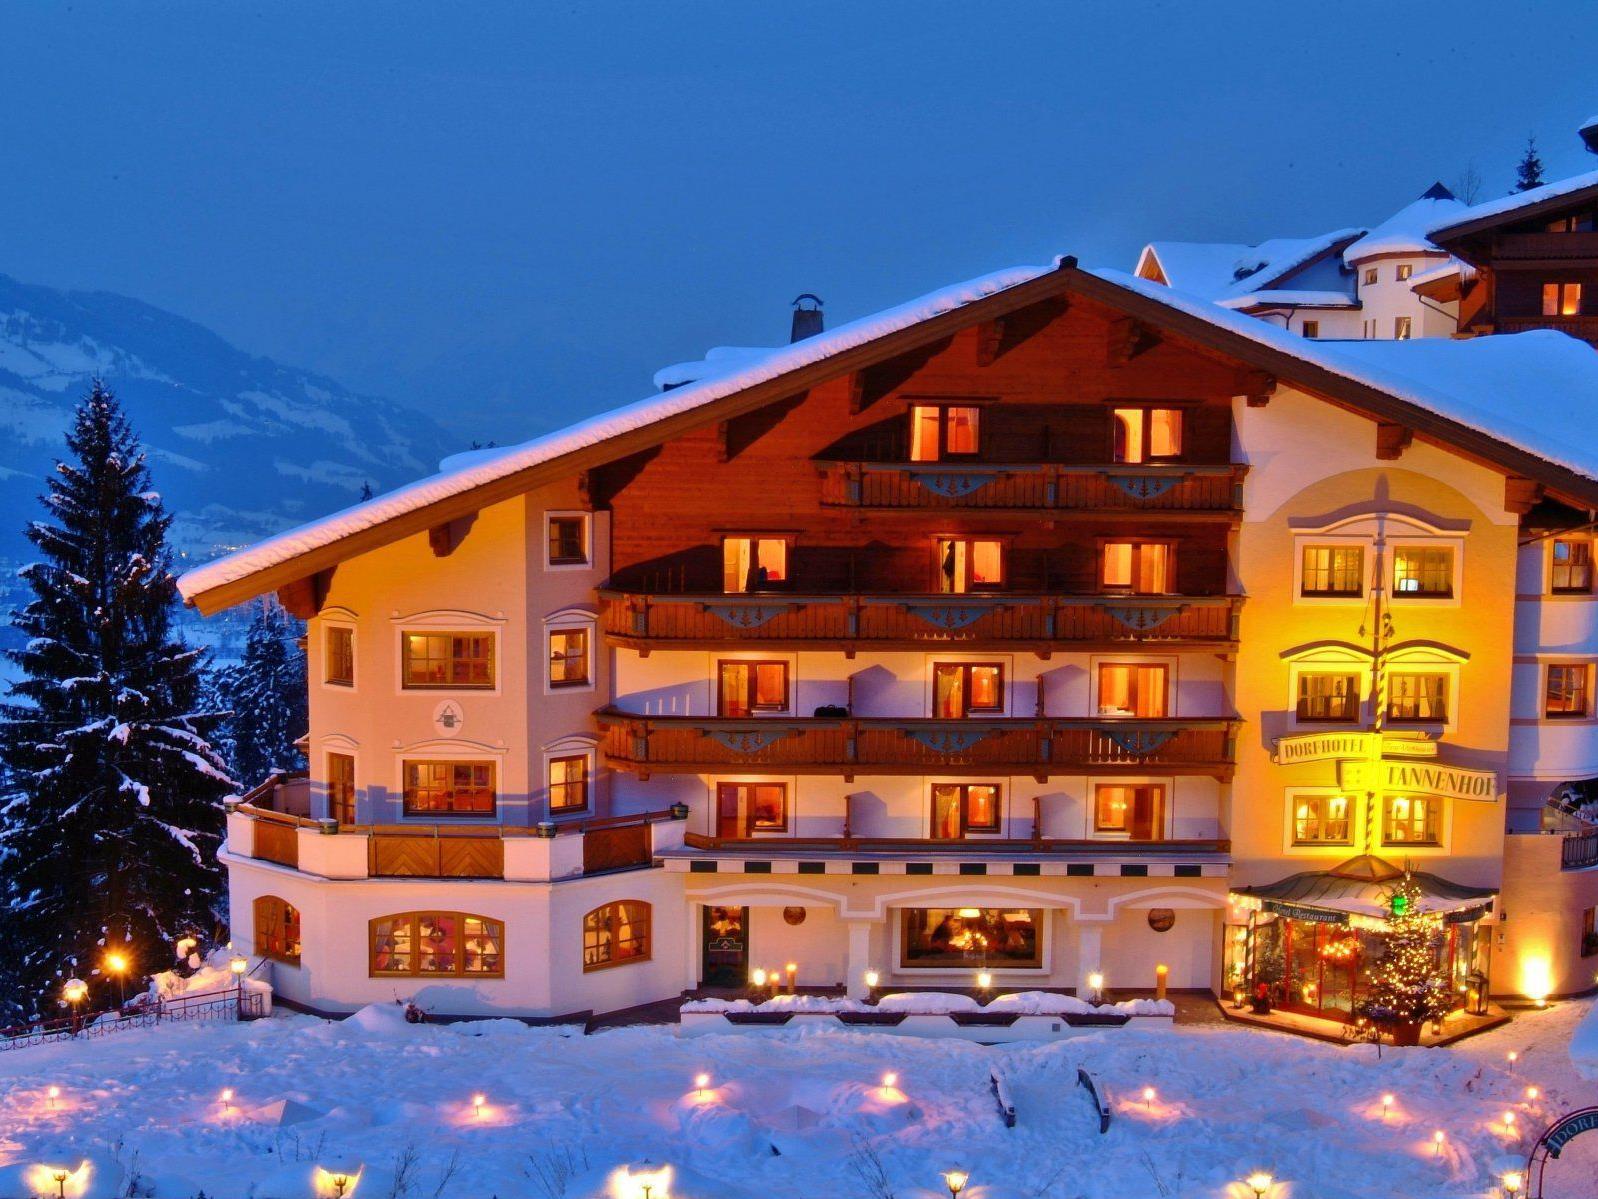 Das "Vienna.at Ferienzuckerl": Die Skipisten der Ski amadé direkt vor der Hoteltüre und ein Alpines-Lifestyle-Hotel, in dem der Urlaub ab der ersten Minute beginnt.